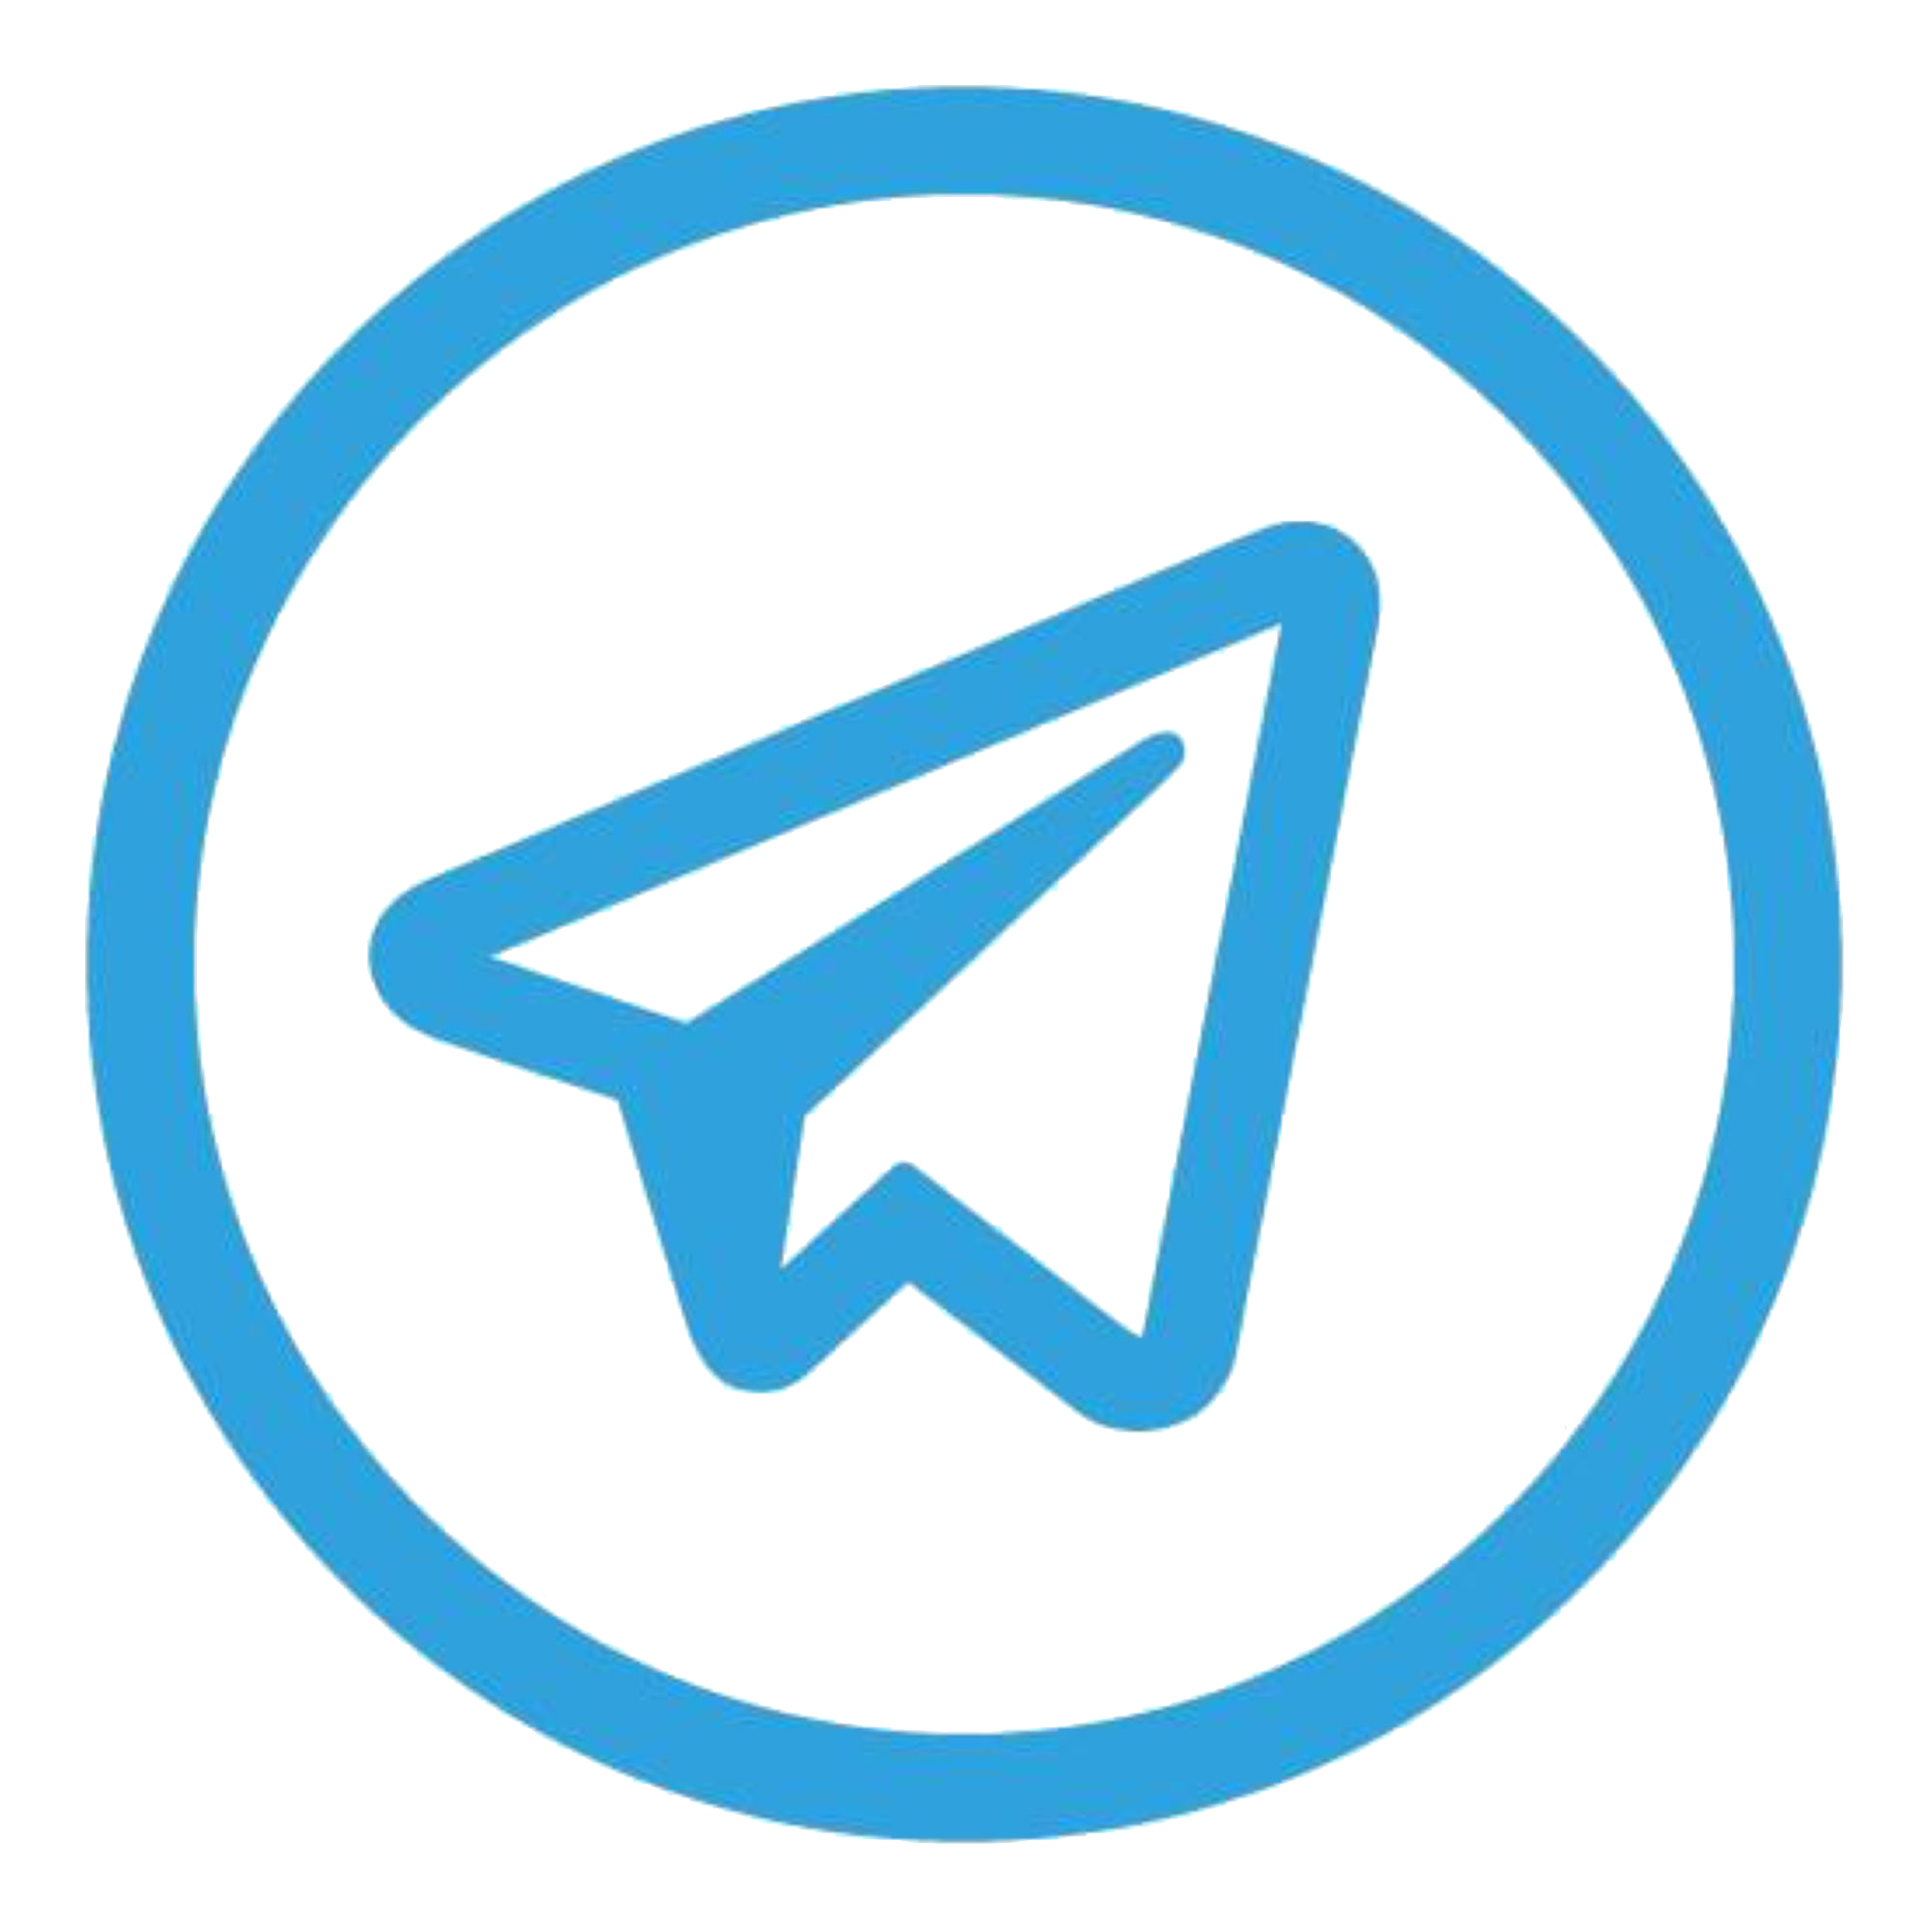 Only телеграмм. Значе телеграм. Телеграмм лого. Логотип Telegram. Пиктограмма телеграмм.